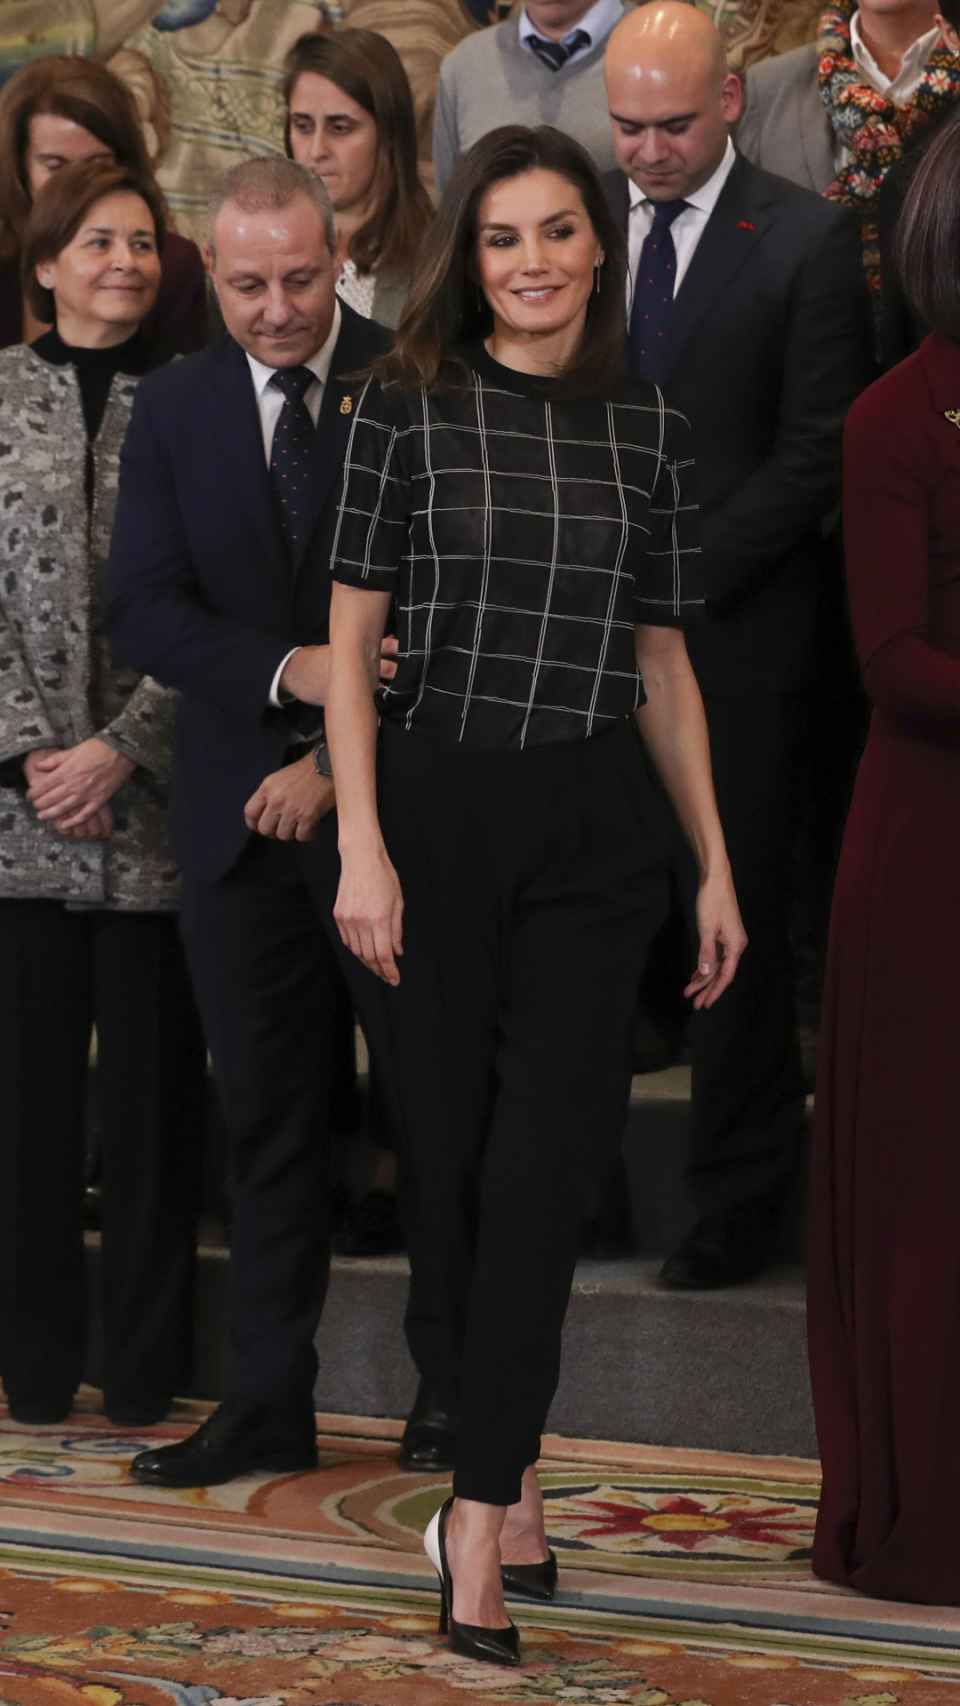 La reina Letizia caminando ante los invitados en Zarzuela.